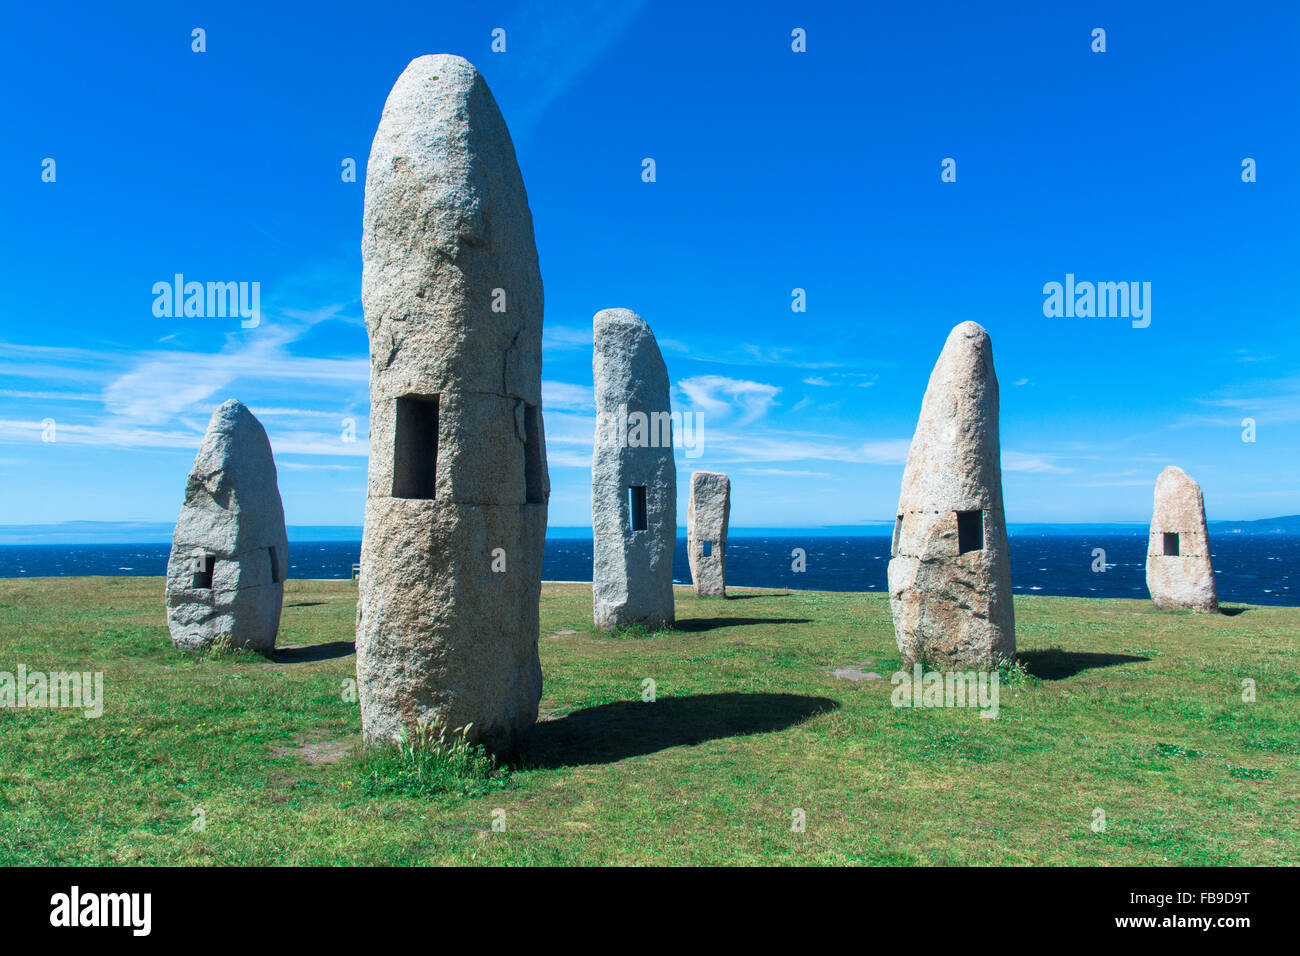 Monumenti antichi con i fori nel campo Foto Stock